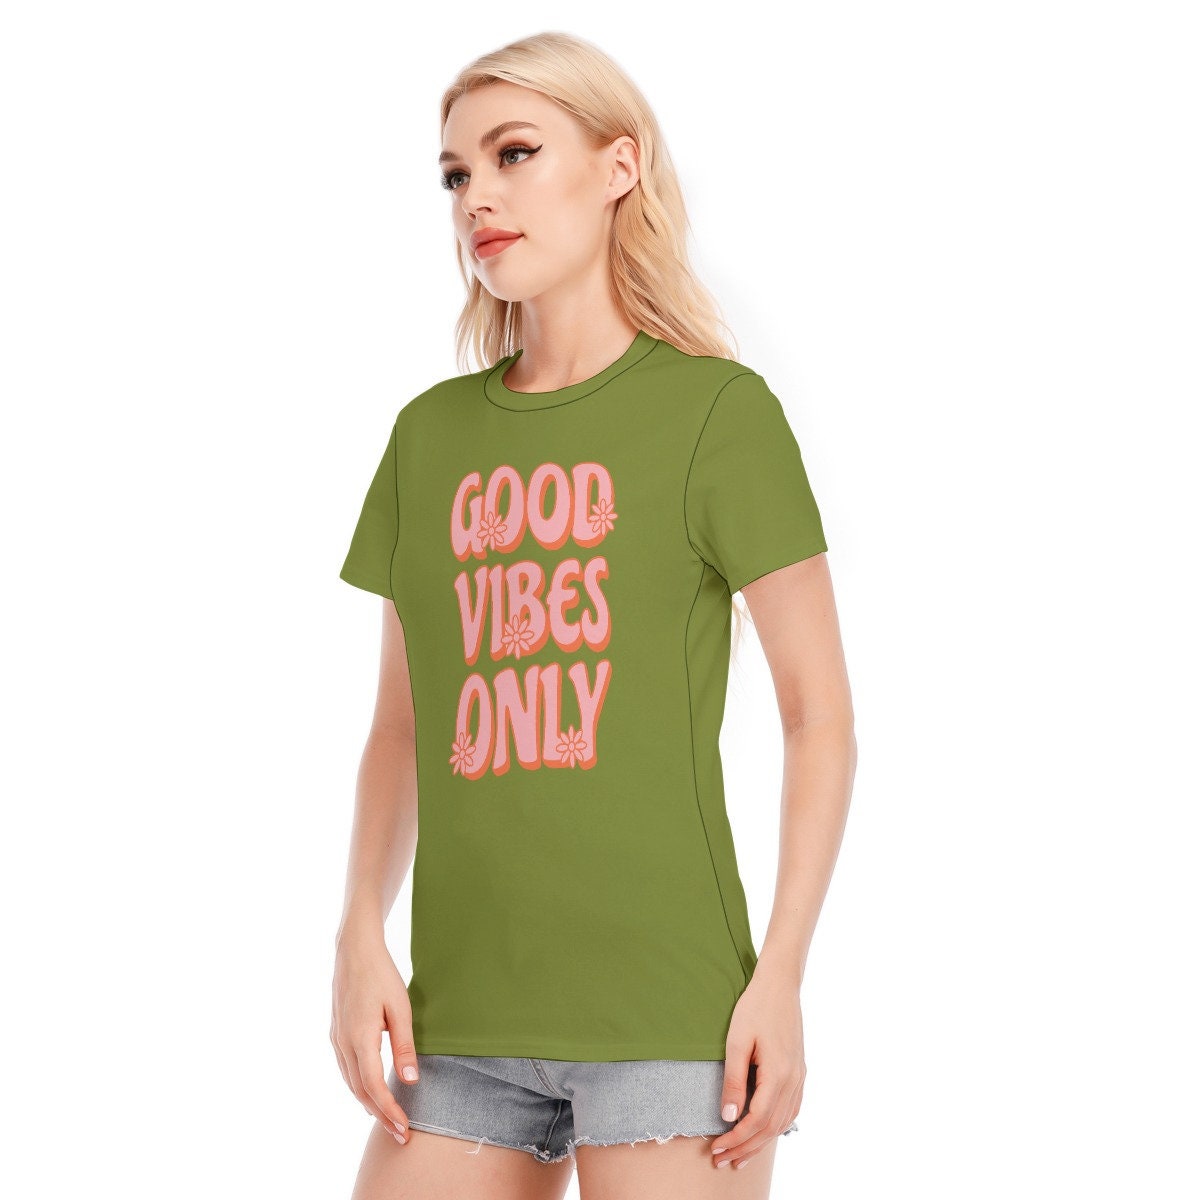 T-shirt rétro, T-shirts mots, T-shirt mots vintage, T-shirt mots verts, Tshirt hippie femmes, T-shirt style vintage, T-shirt vert olive